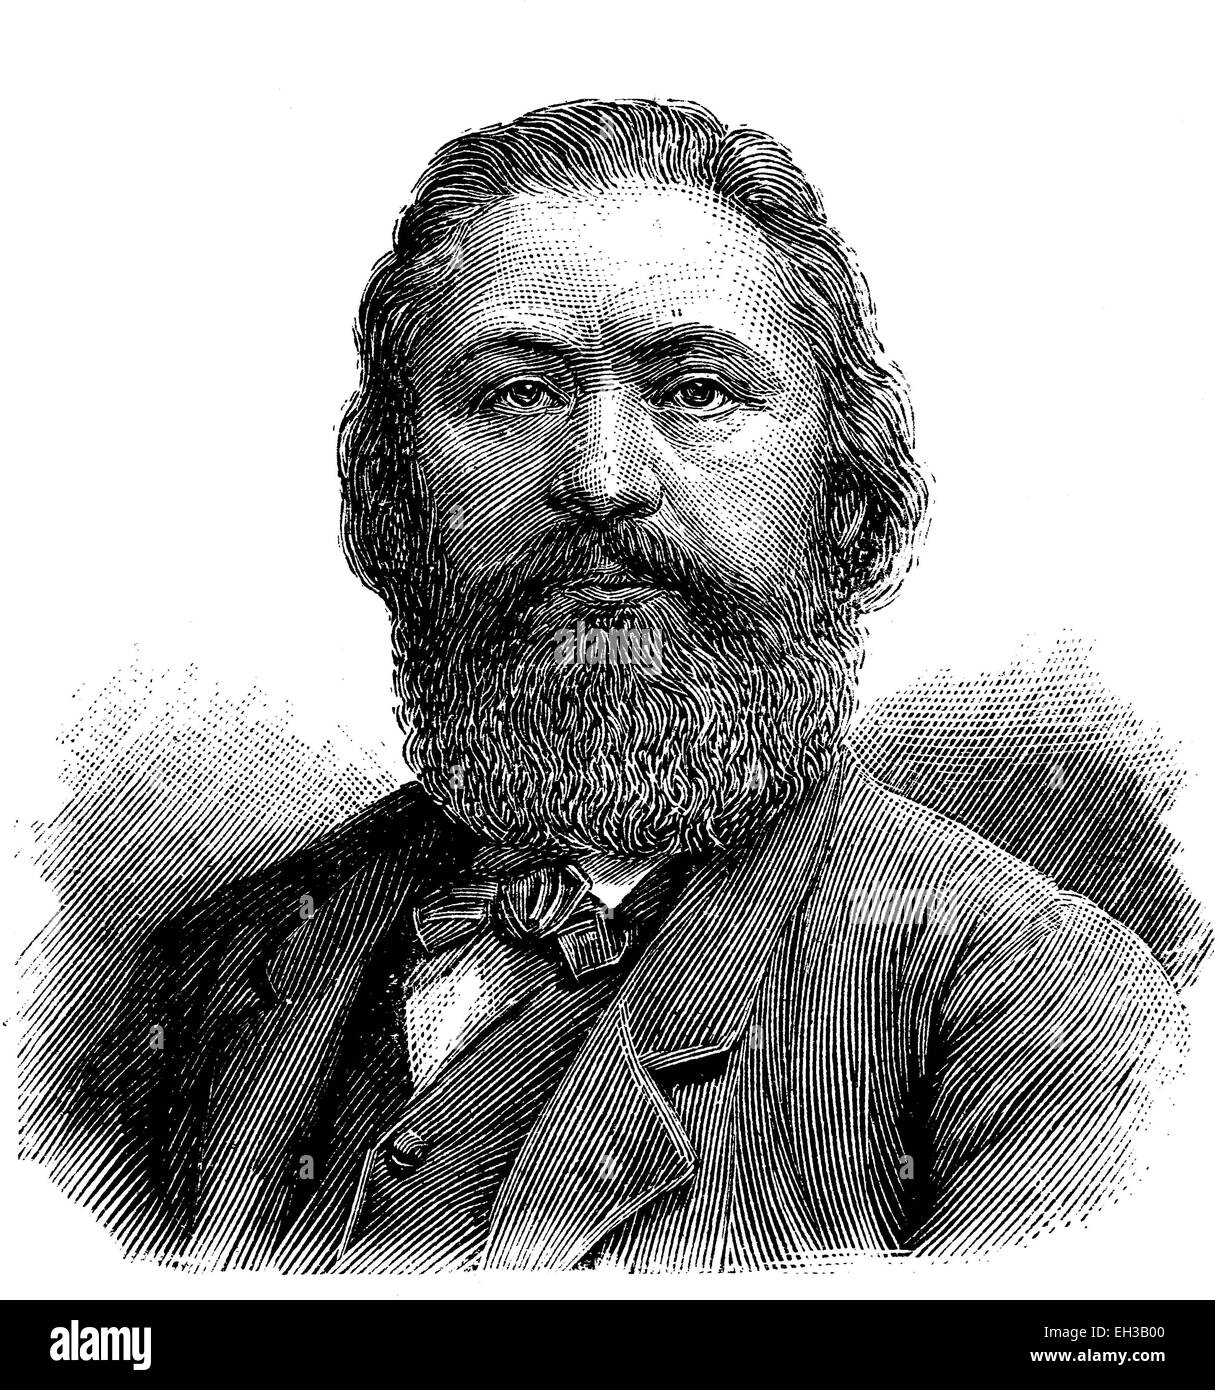 Hermann Kurz, 1813 - 1873, l'auteur allemand, membre de l'Dichterschule Schwaebische connexion poète, journaliste et traducteur, gravure sur bois, 1880 Banque D'Images